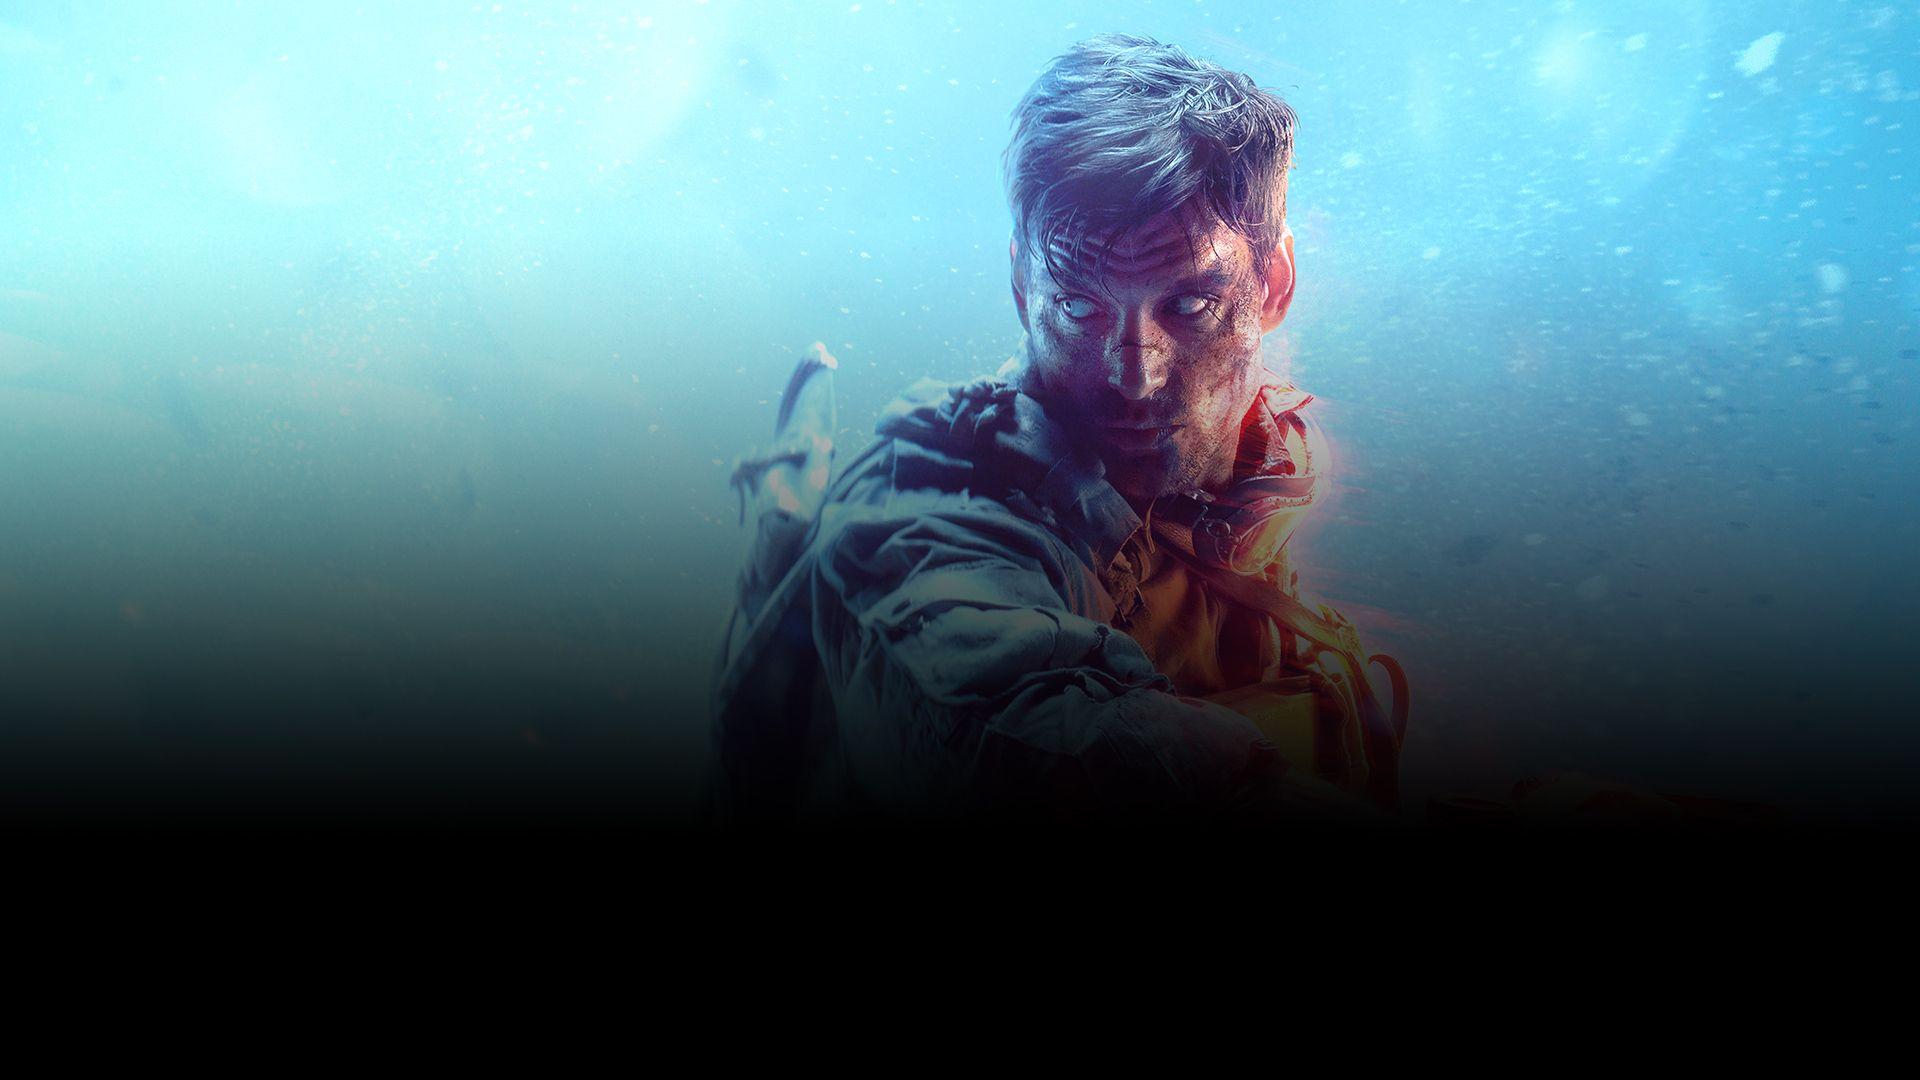 Battlefield V Soldier, HD Games, 4k Wallpaper, Image, Background